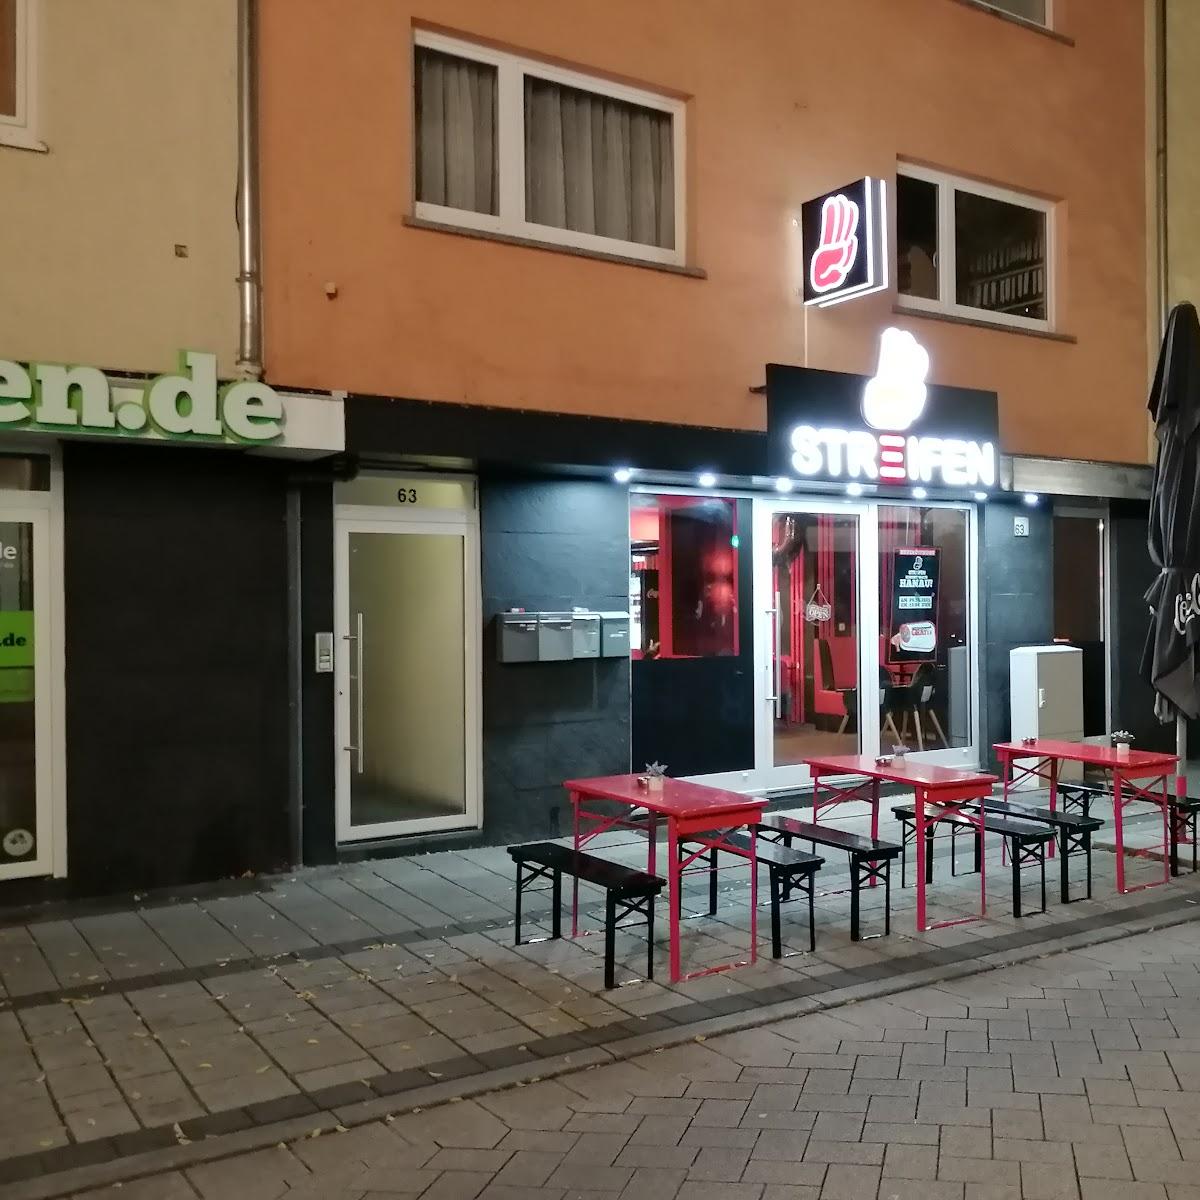 Restaurant "3-Streifen" in Hanau